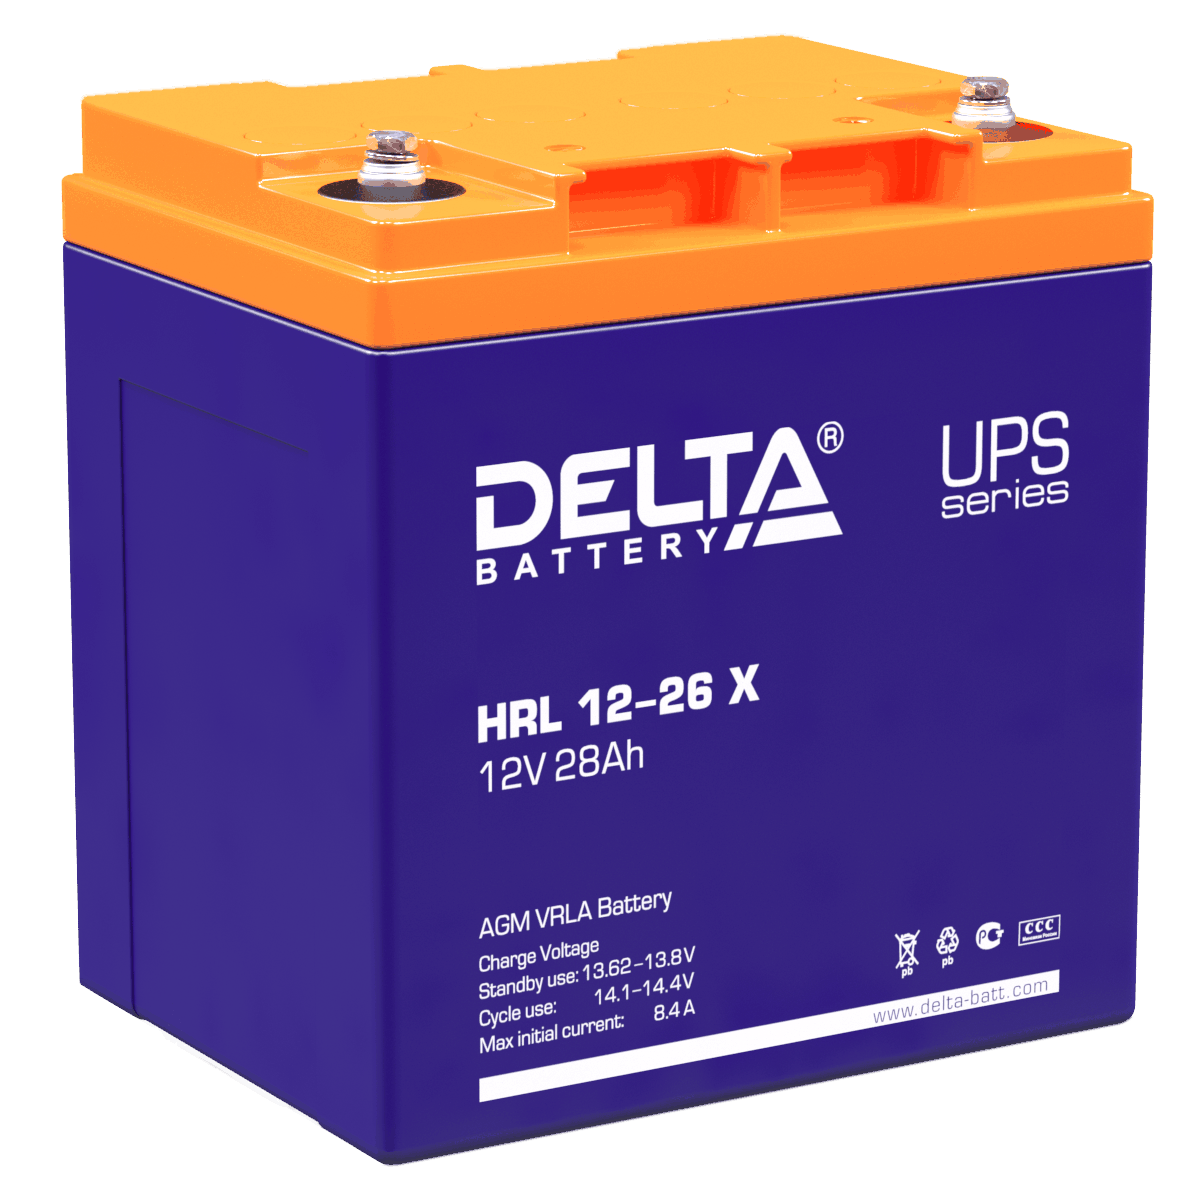 Все Батареи DELTA HRL 12-26 X видеонаблюдения в магазине Vidos Group